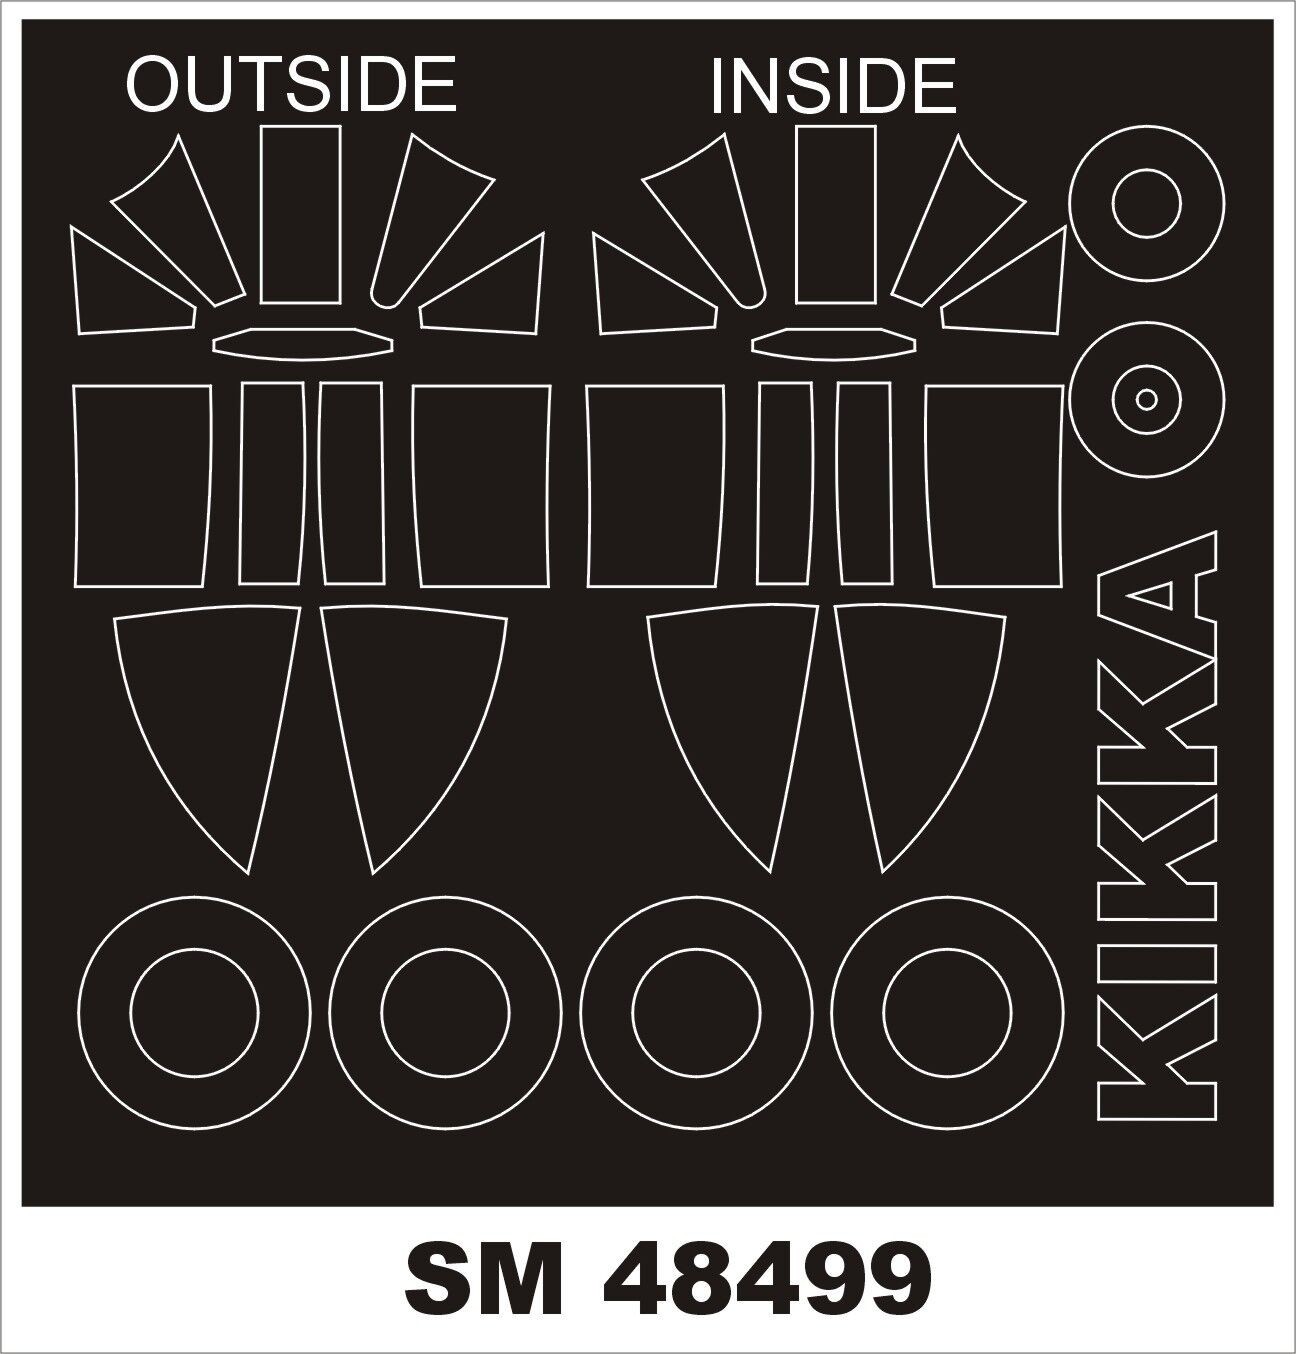  Montex SHISEI KIKKA (extérieur, intérieur) (conçu pour être utilisé a